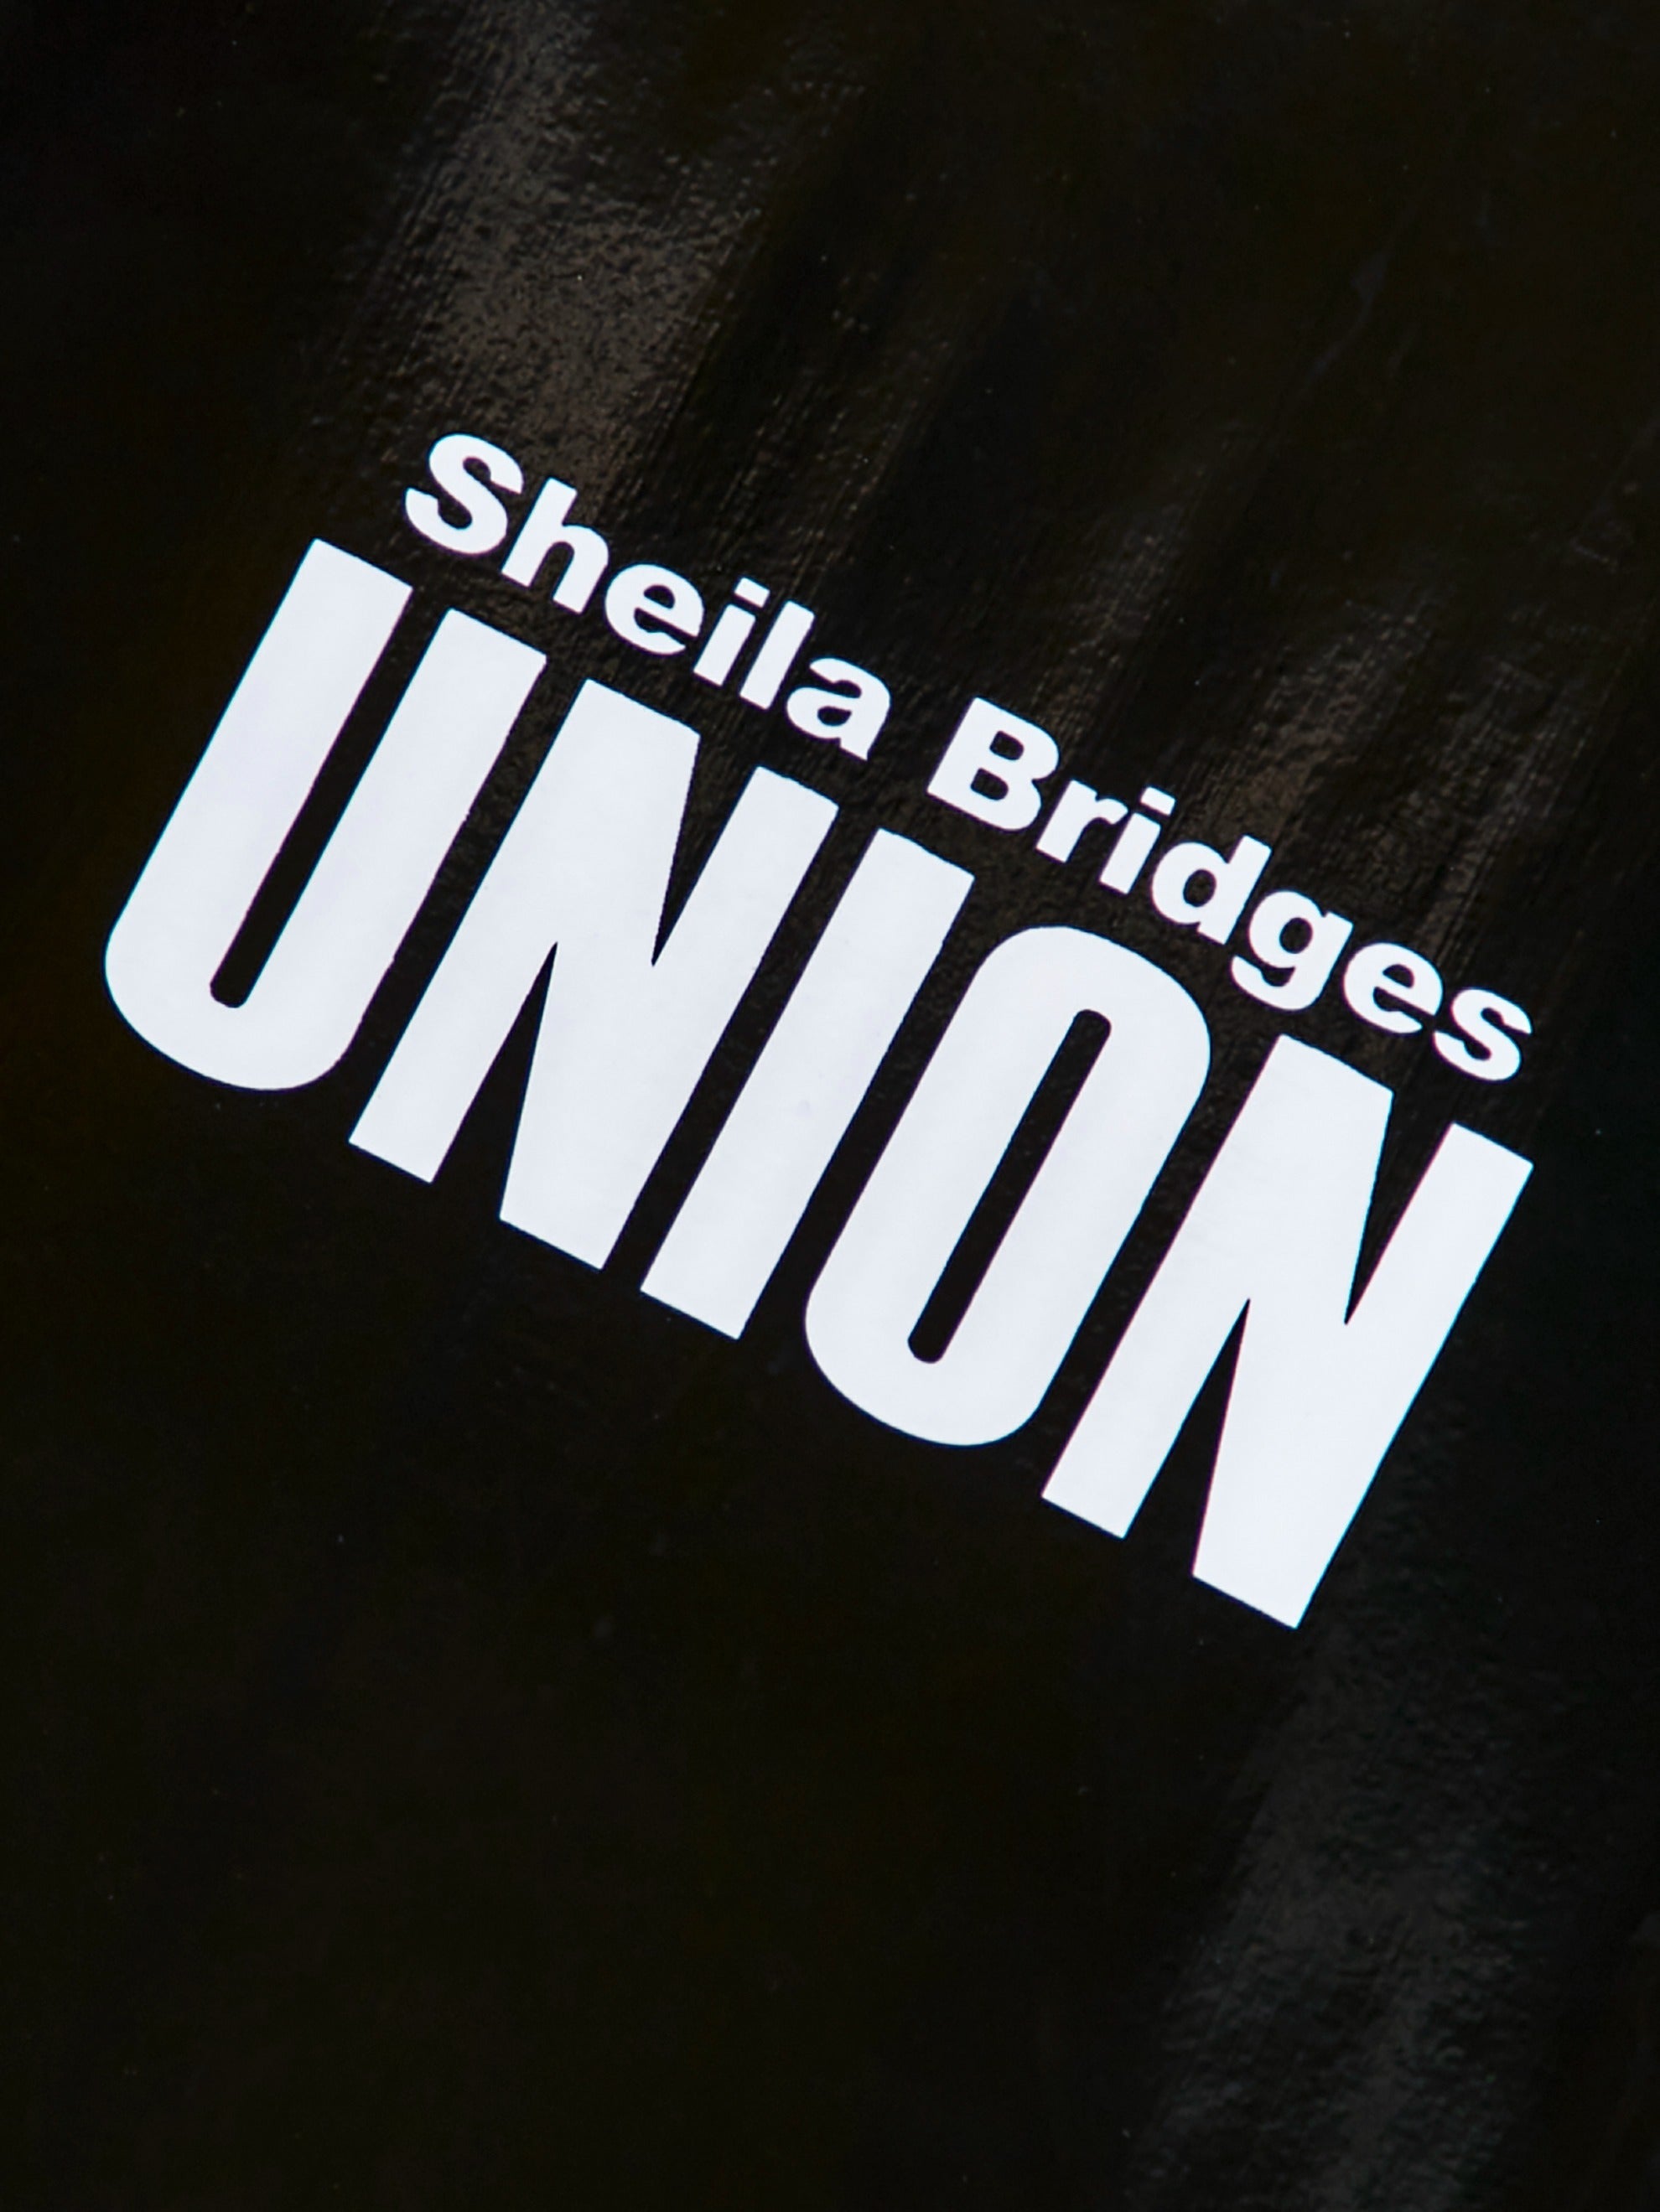 Union x Sheila Bridges Deck